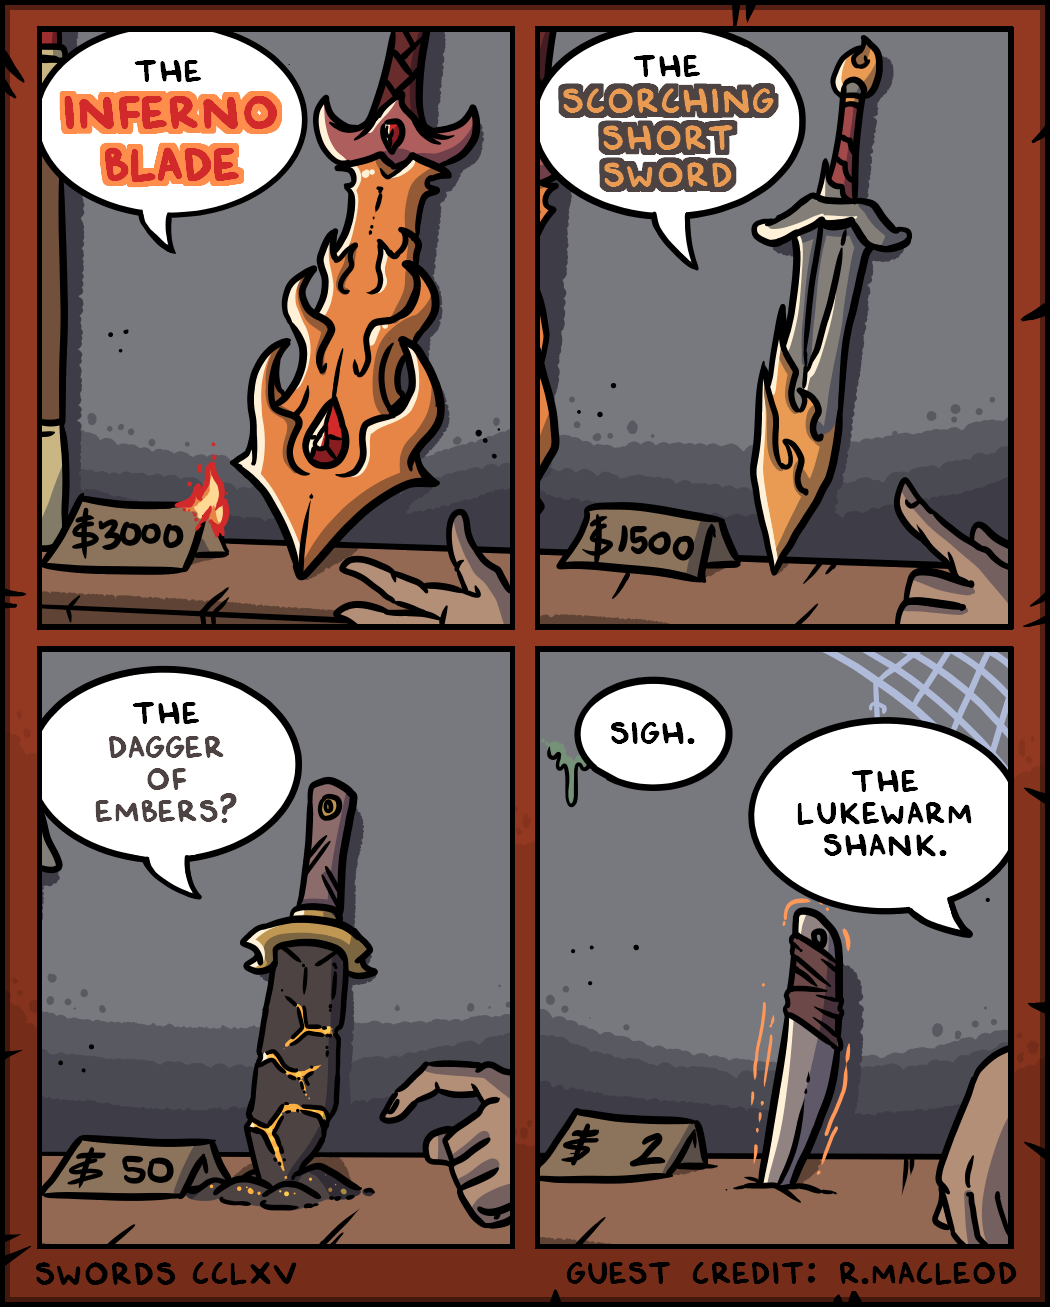 Fire Swords